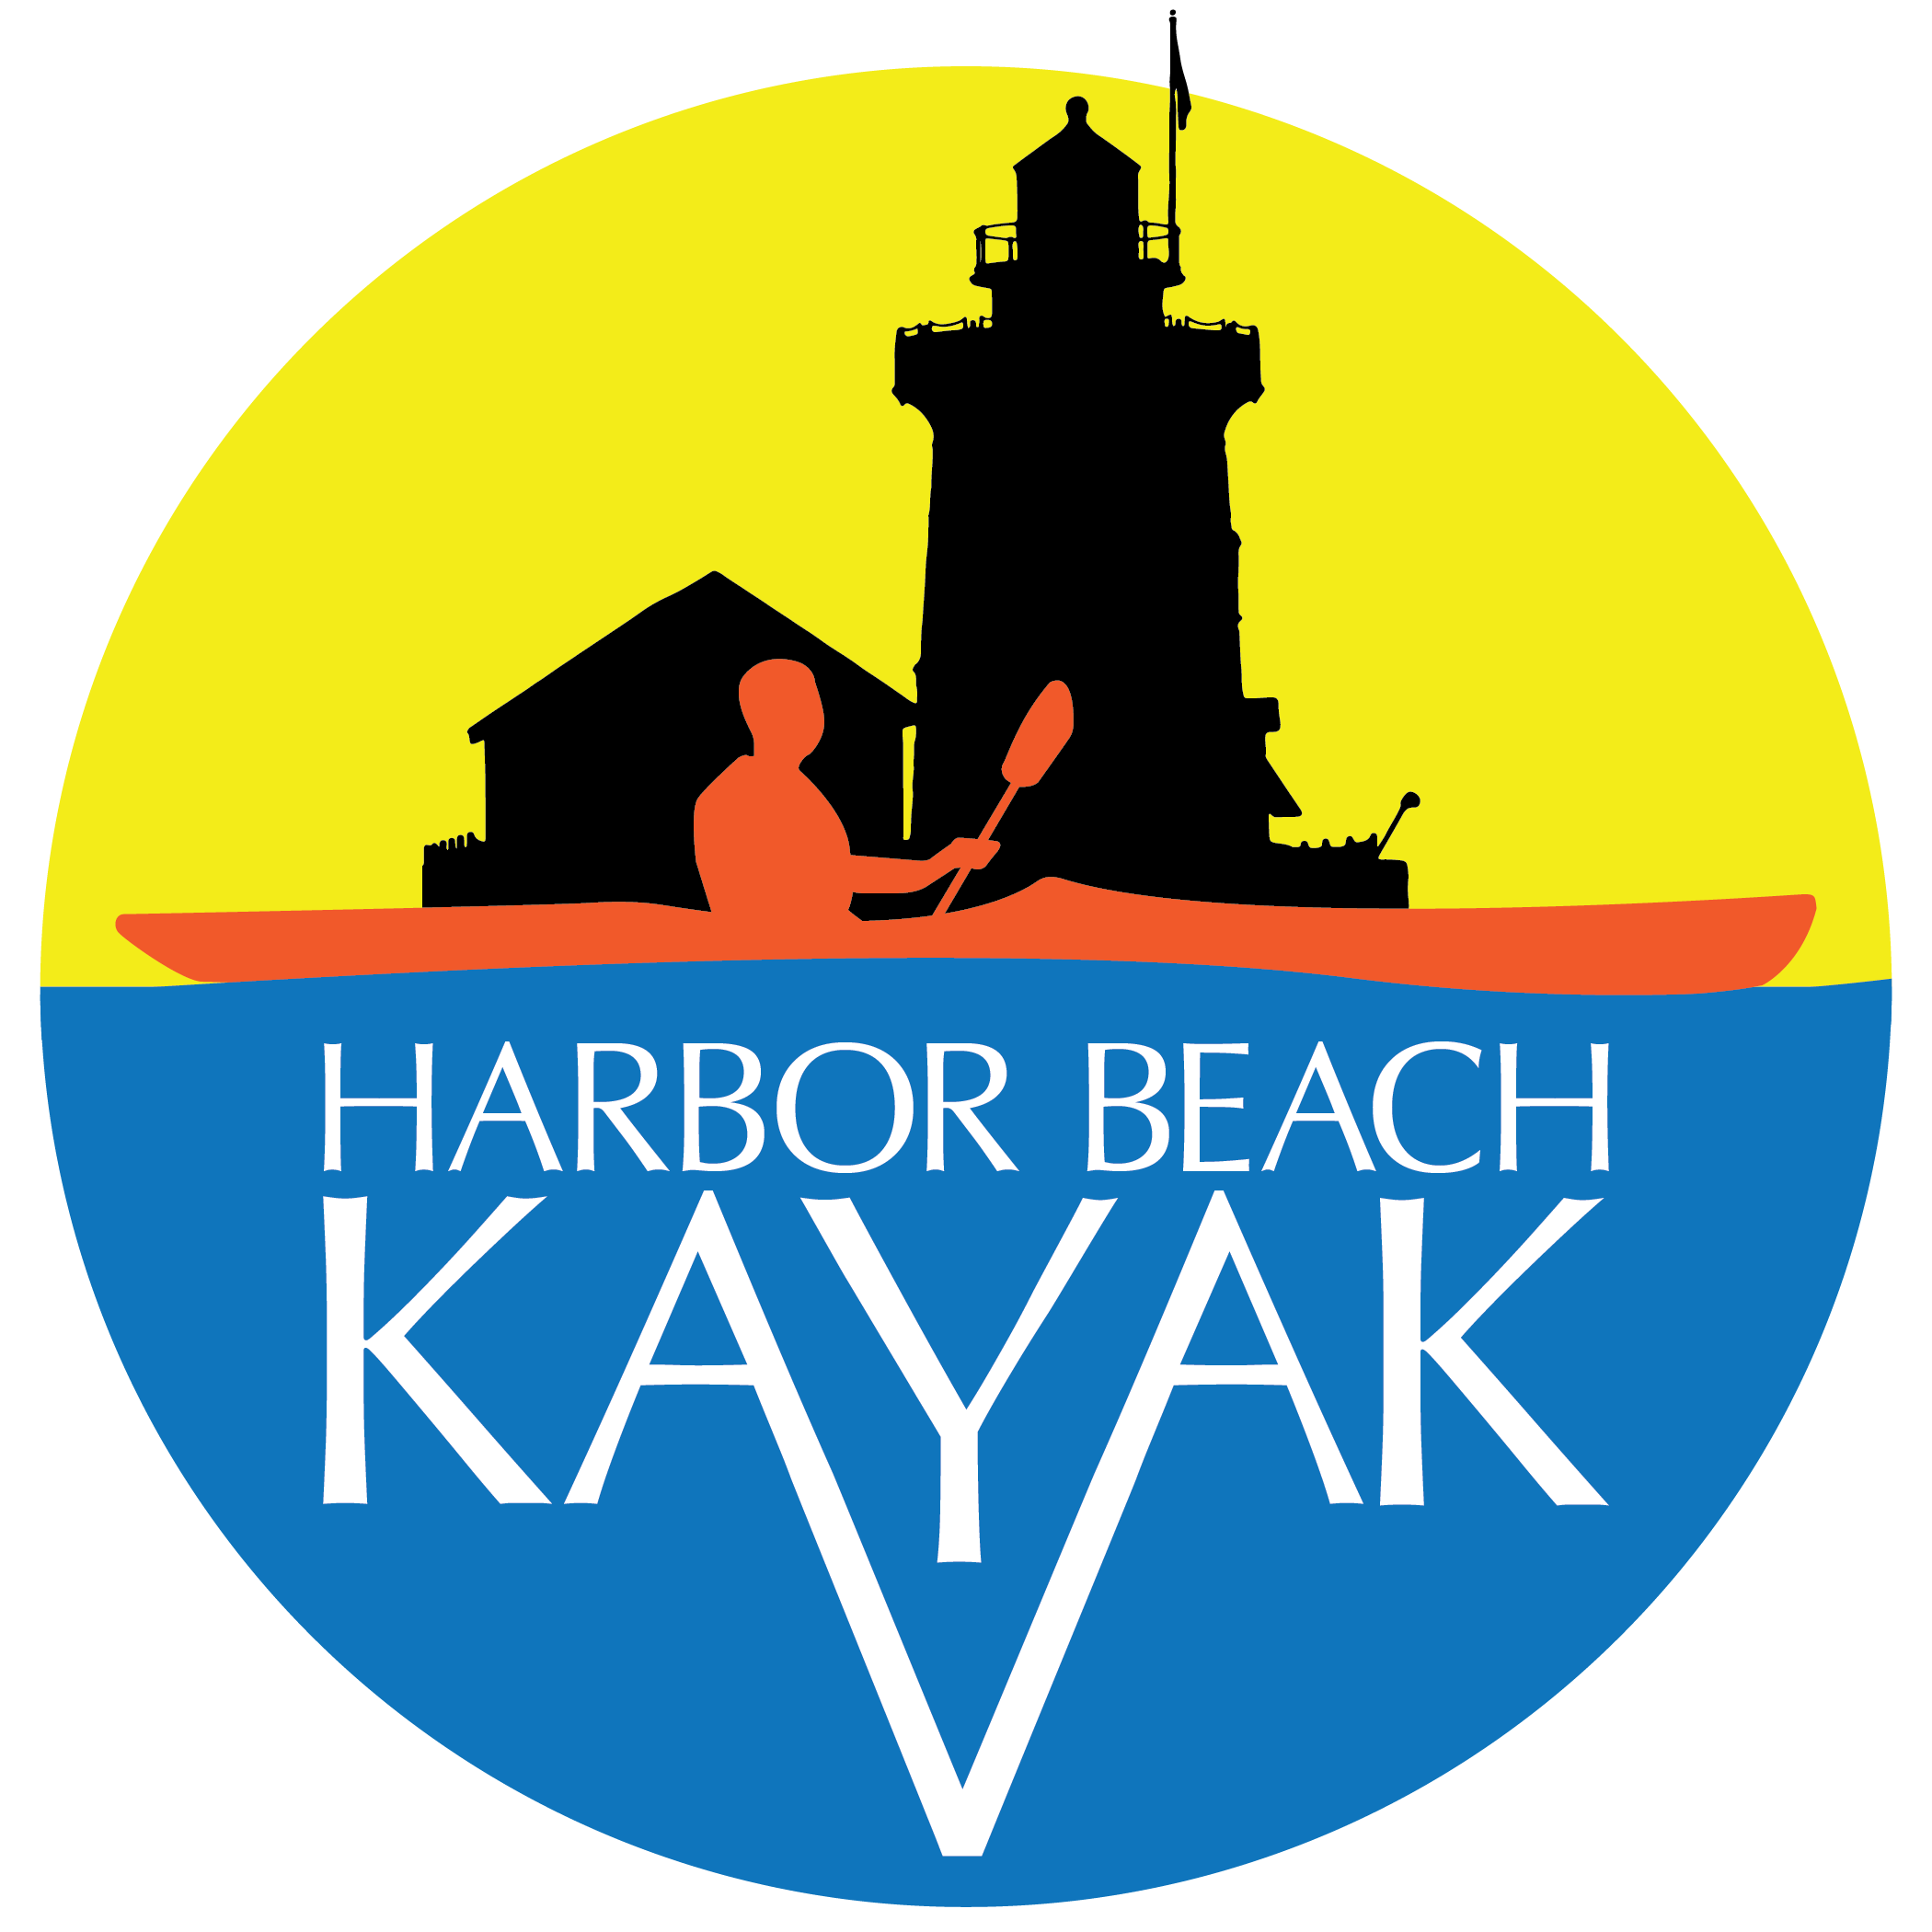 Harbor Beach Kayak (Copy)